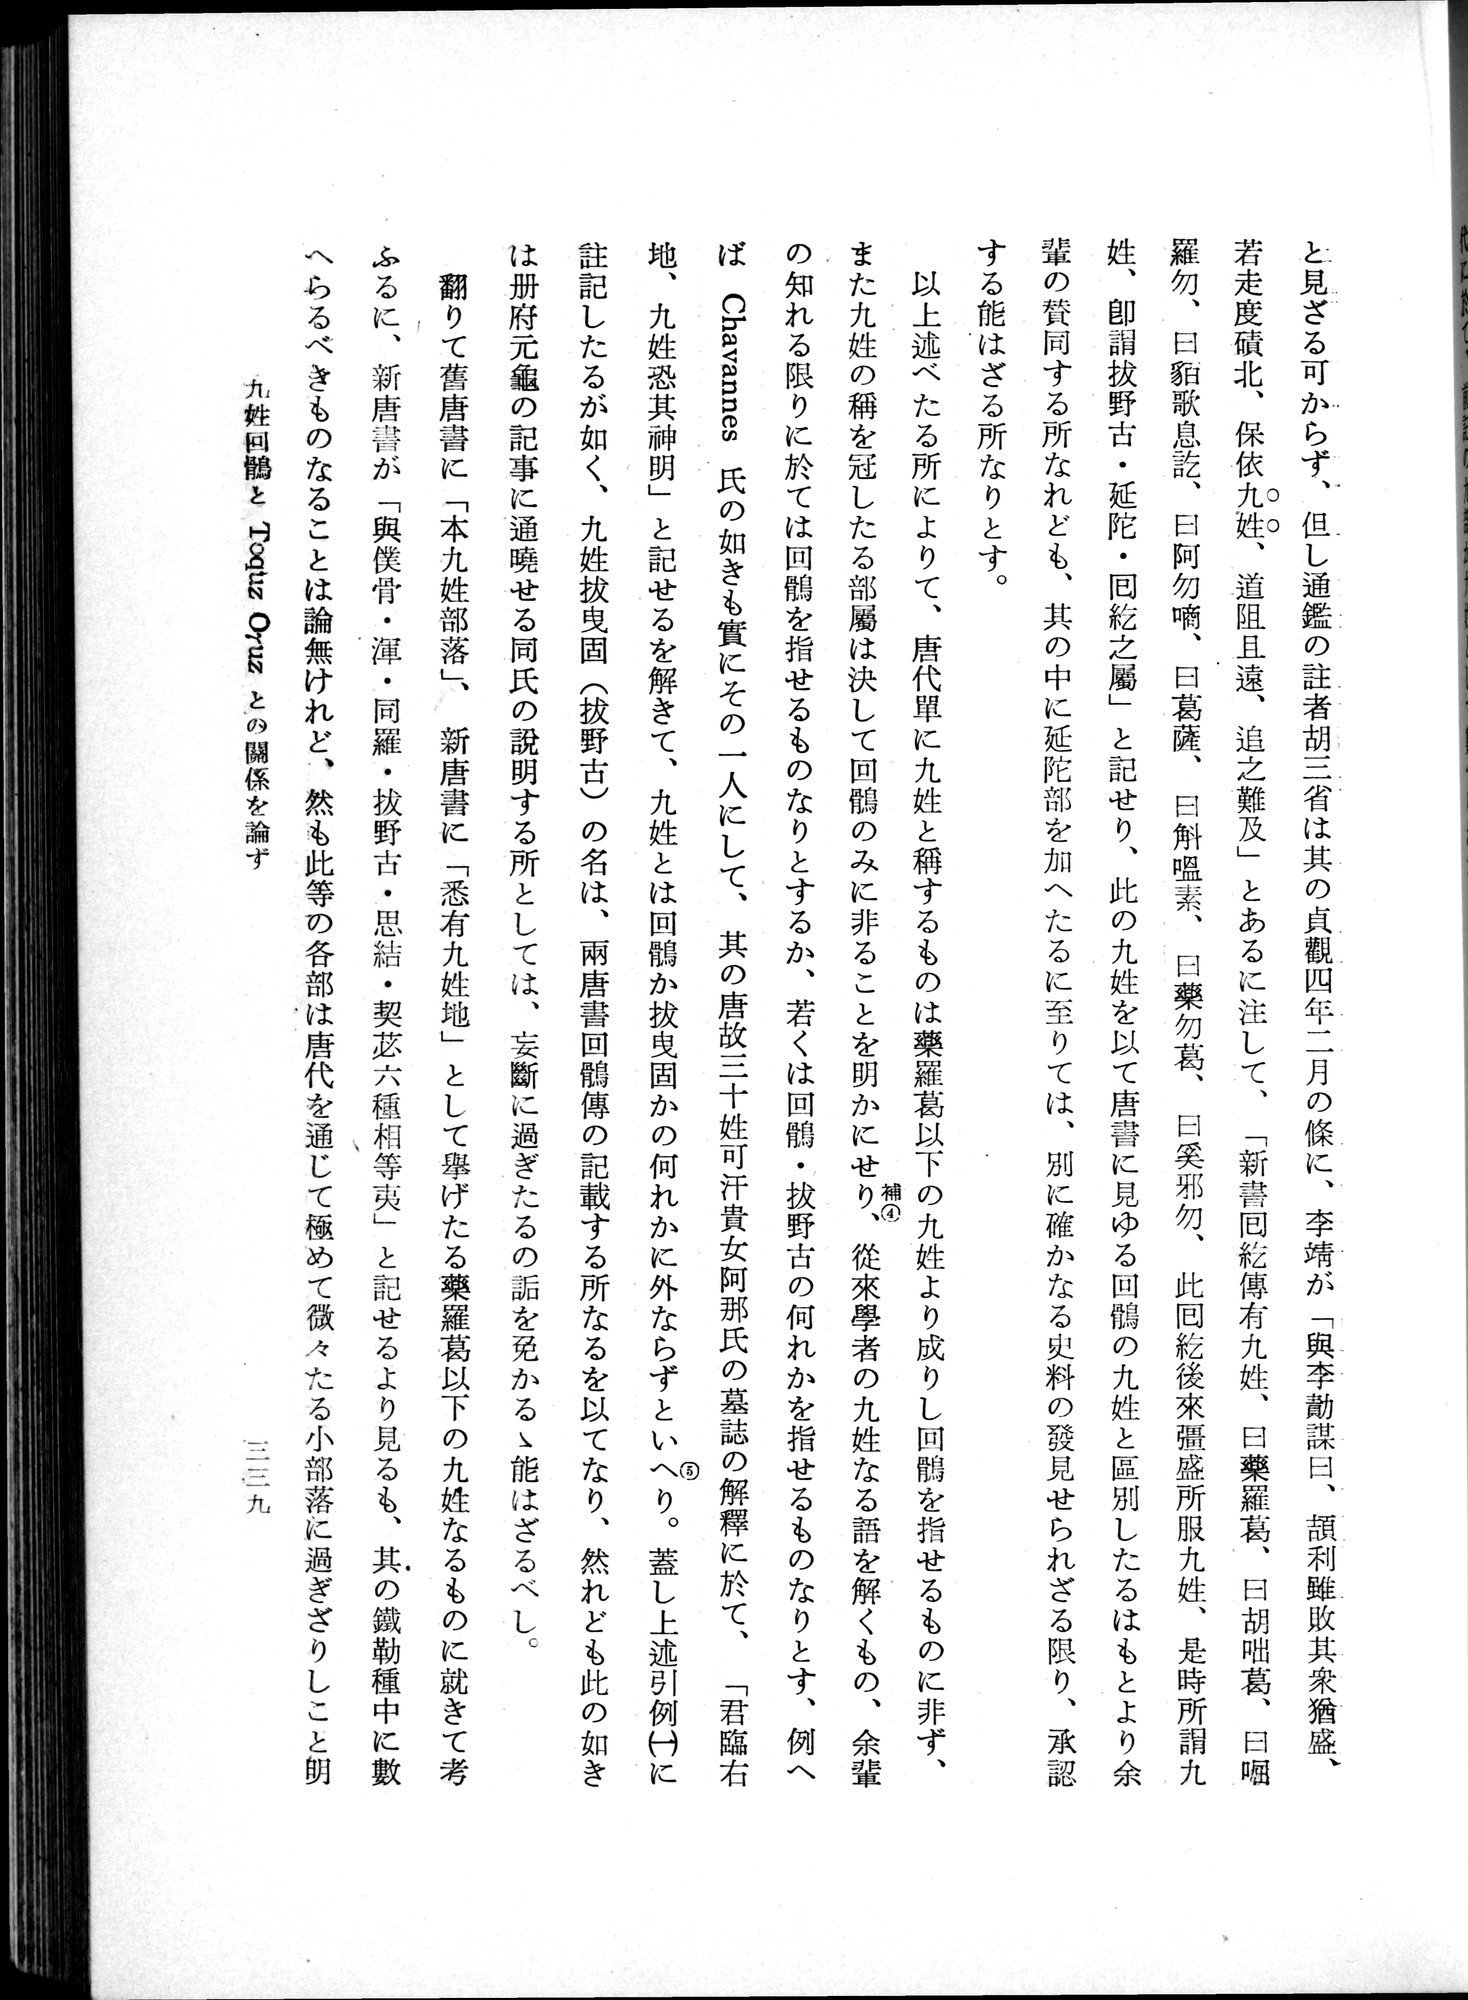 羽田博士史学論文集 : vol.1 / Page 377 (Grayscale High Resolution Image)